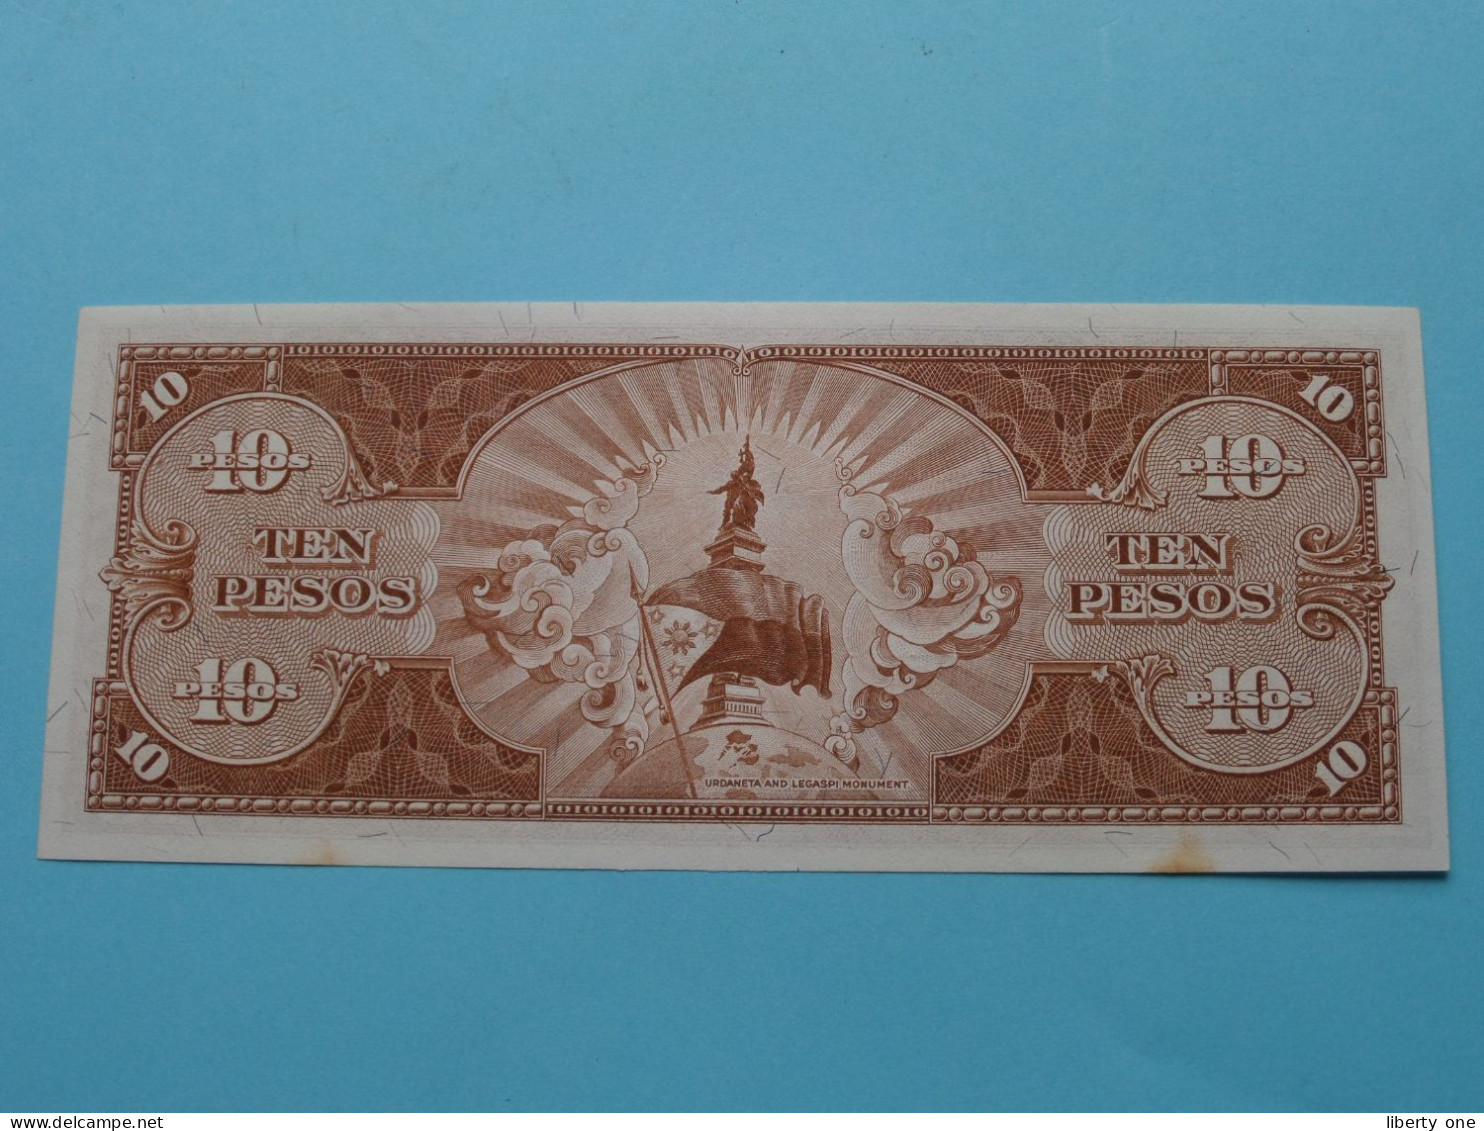 10 Pesos Ten ( EV333055 ) Isgn. 8 ( Voir / See > Scans ) UNC ! - Filippijnen